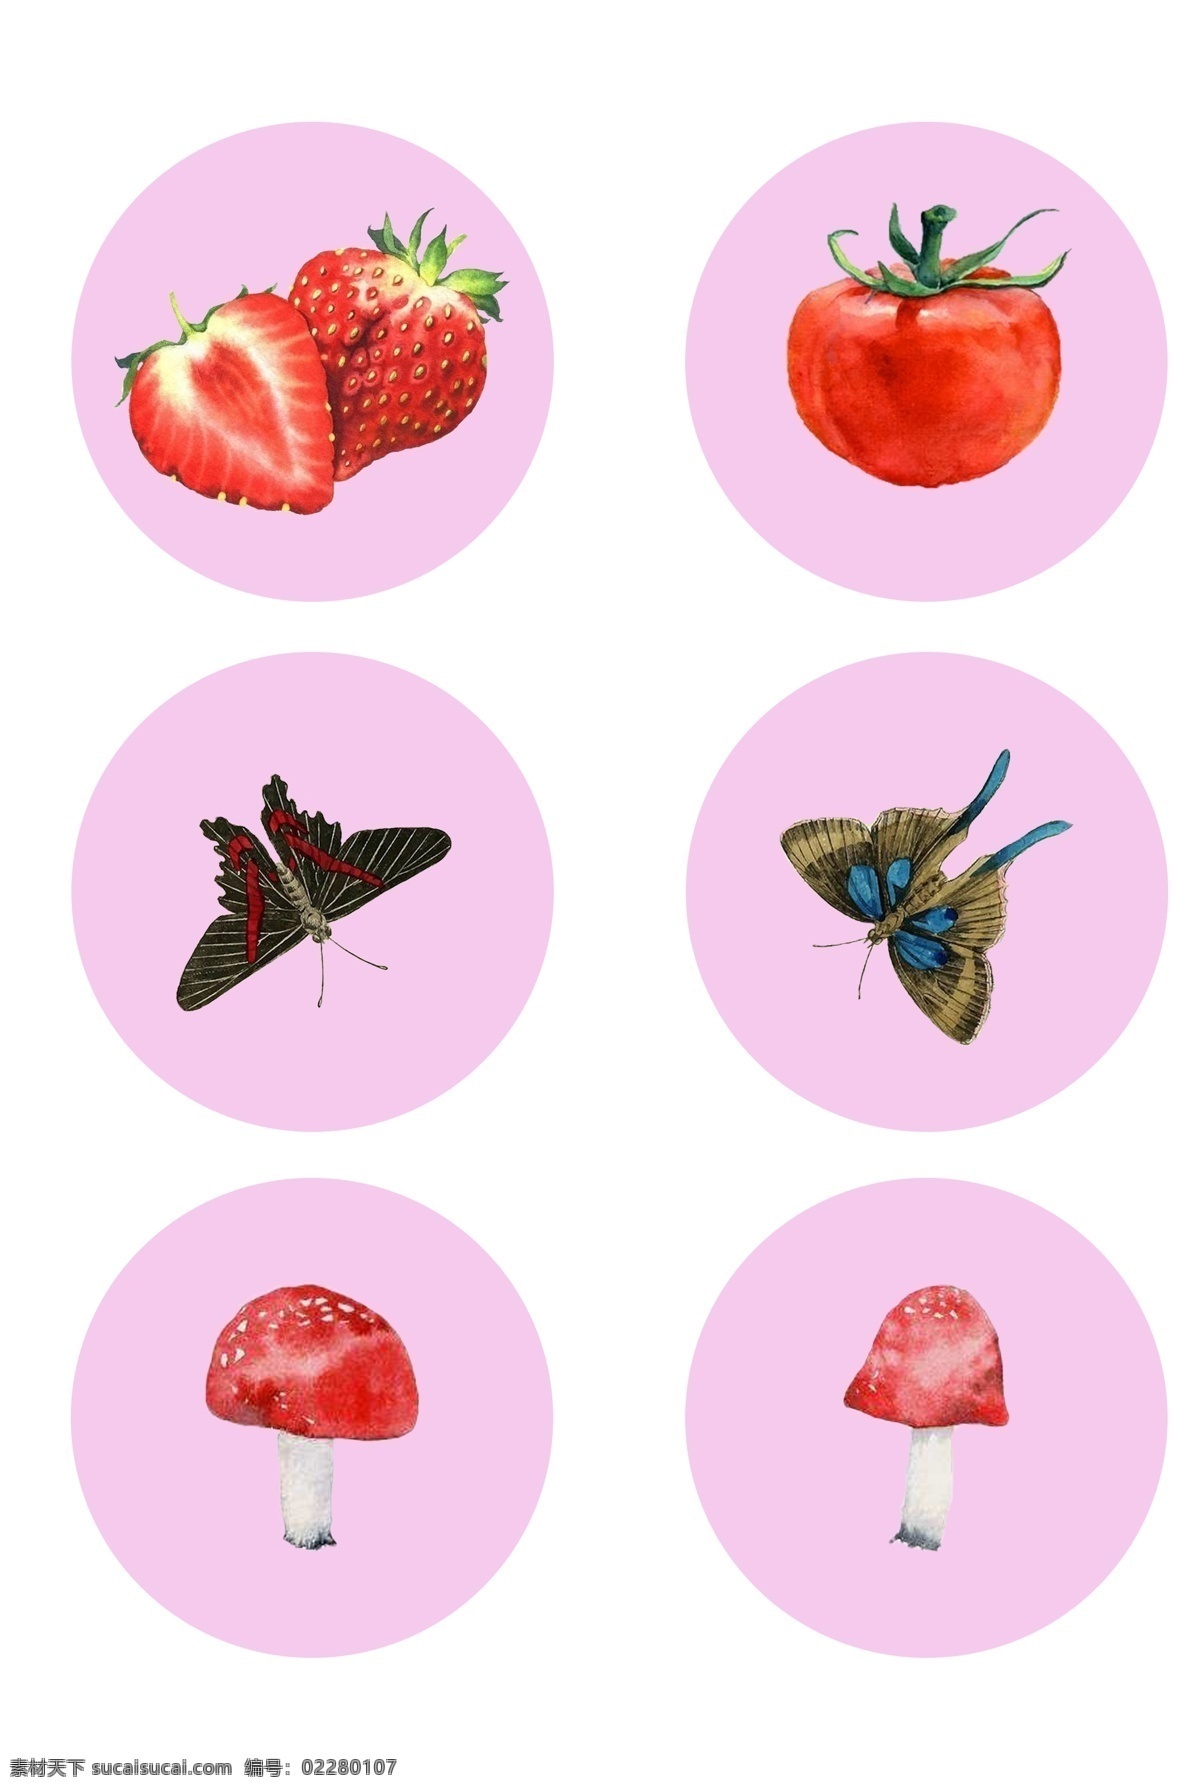 手绘 唯美 水果 蝴蝶 蘑菇 装饰 手绘png 可爱png 草莓 番茄 生动 用于 学习交流 海报制作 装饰等